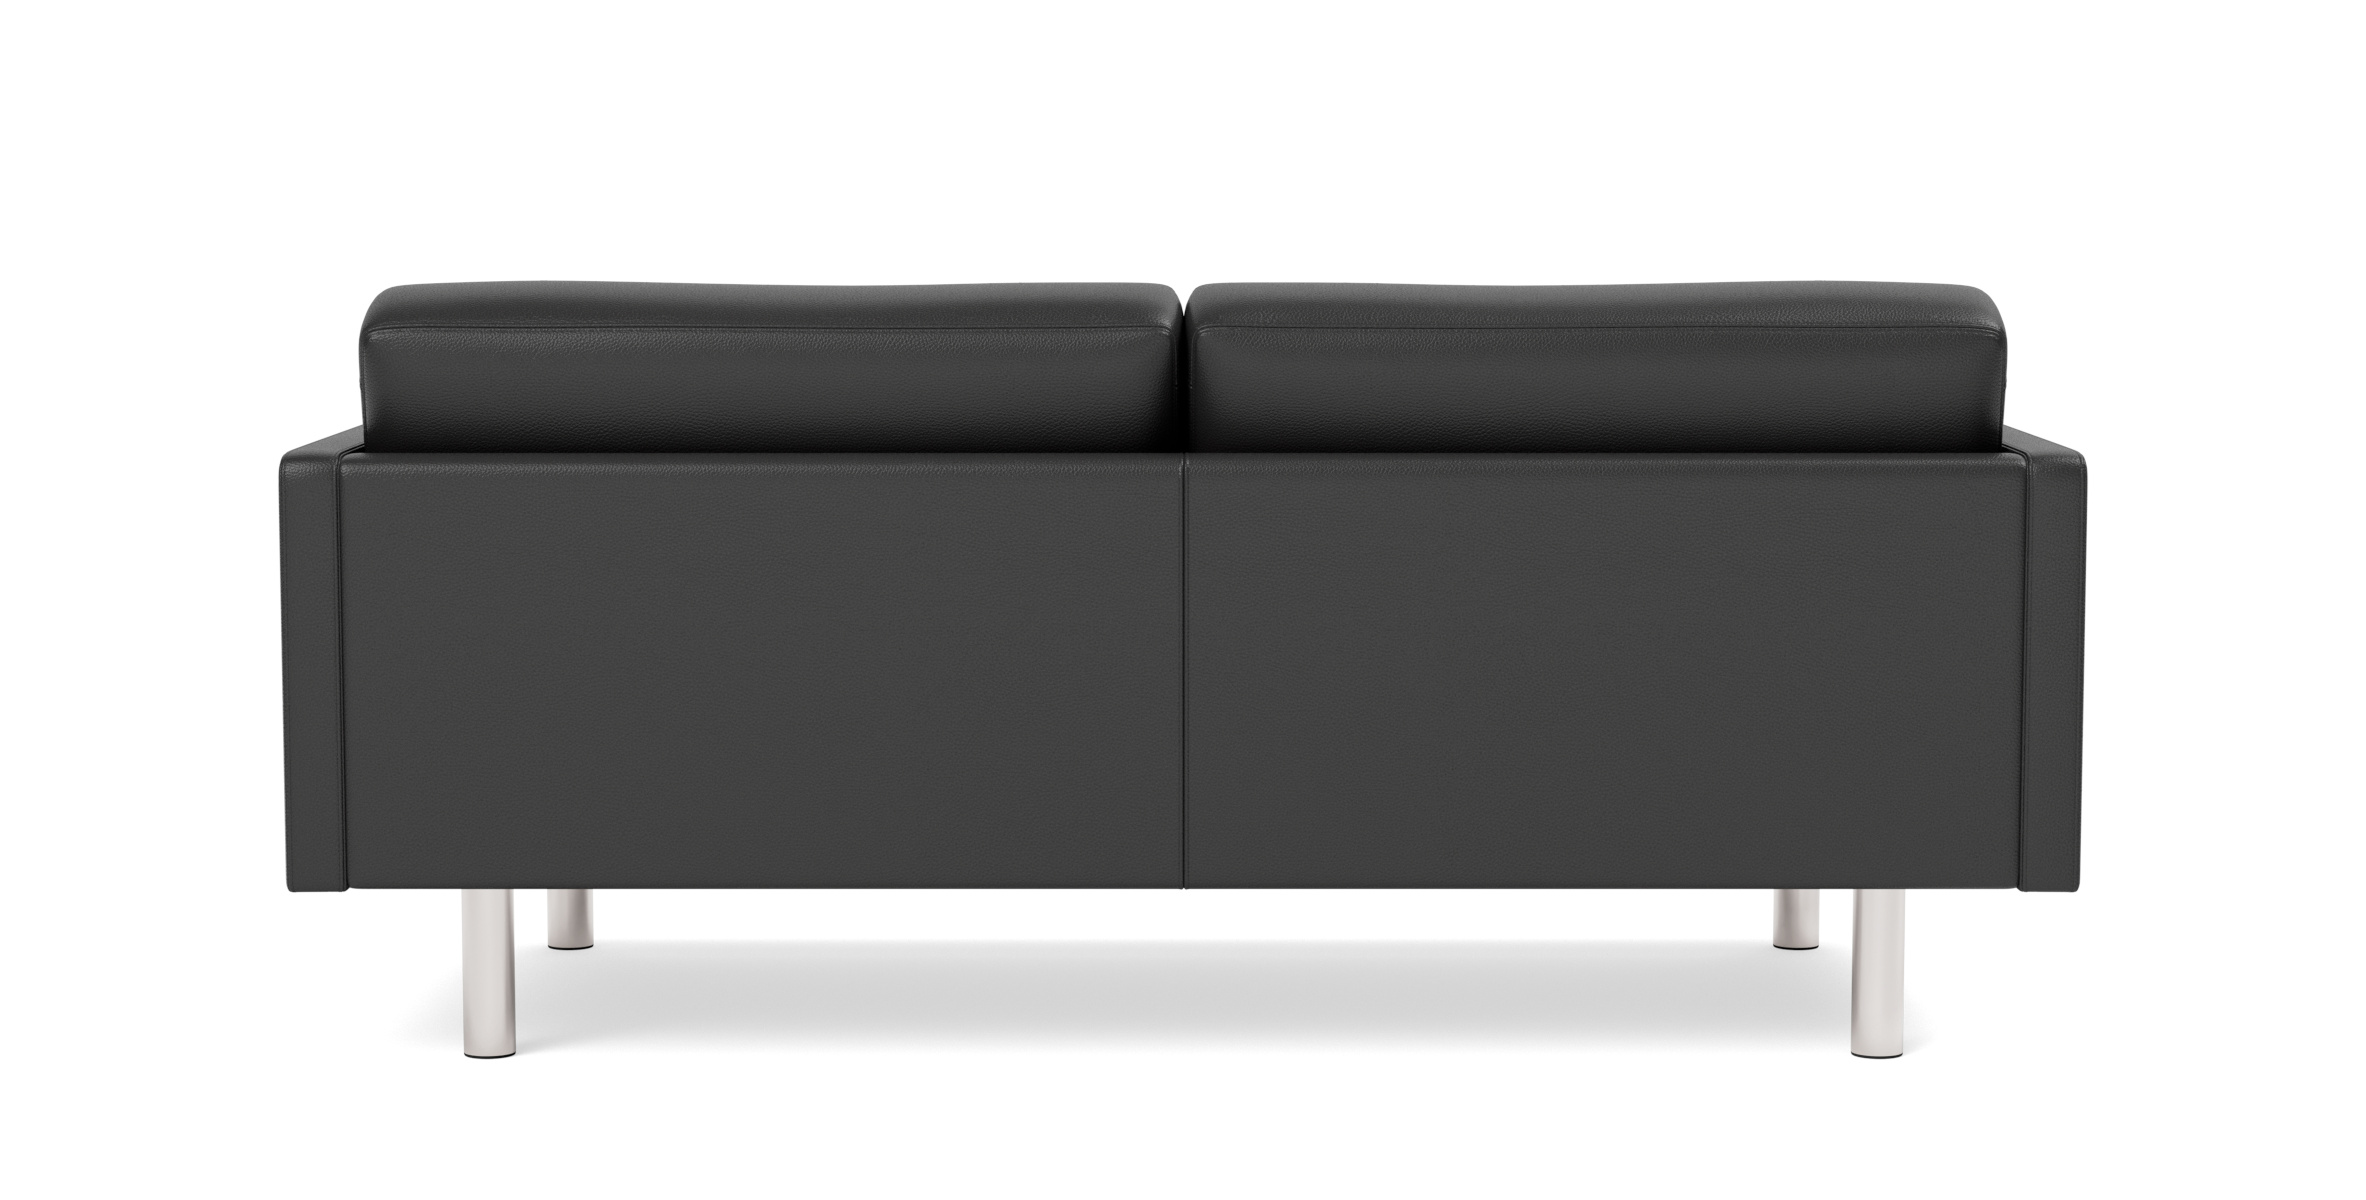 EJ220 Sofa 2-Sitzer, 76 cm, brushed chrom / leder omni 301 schwarz